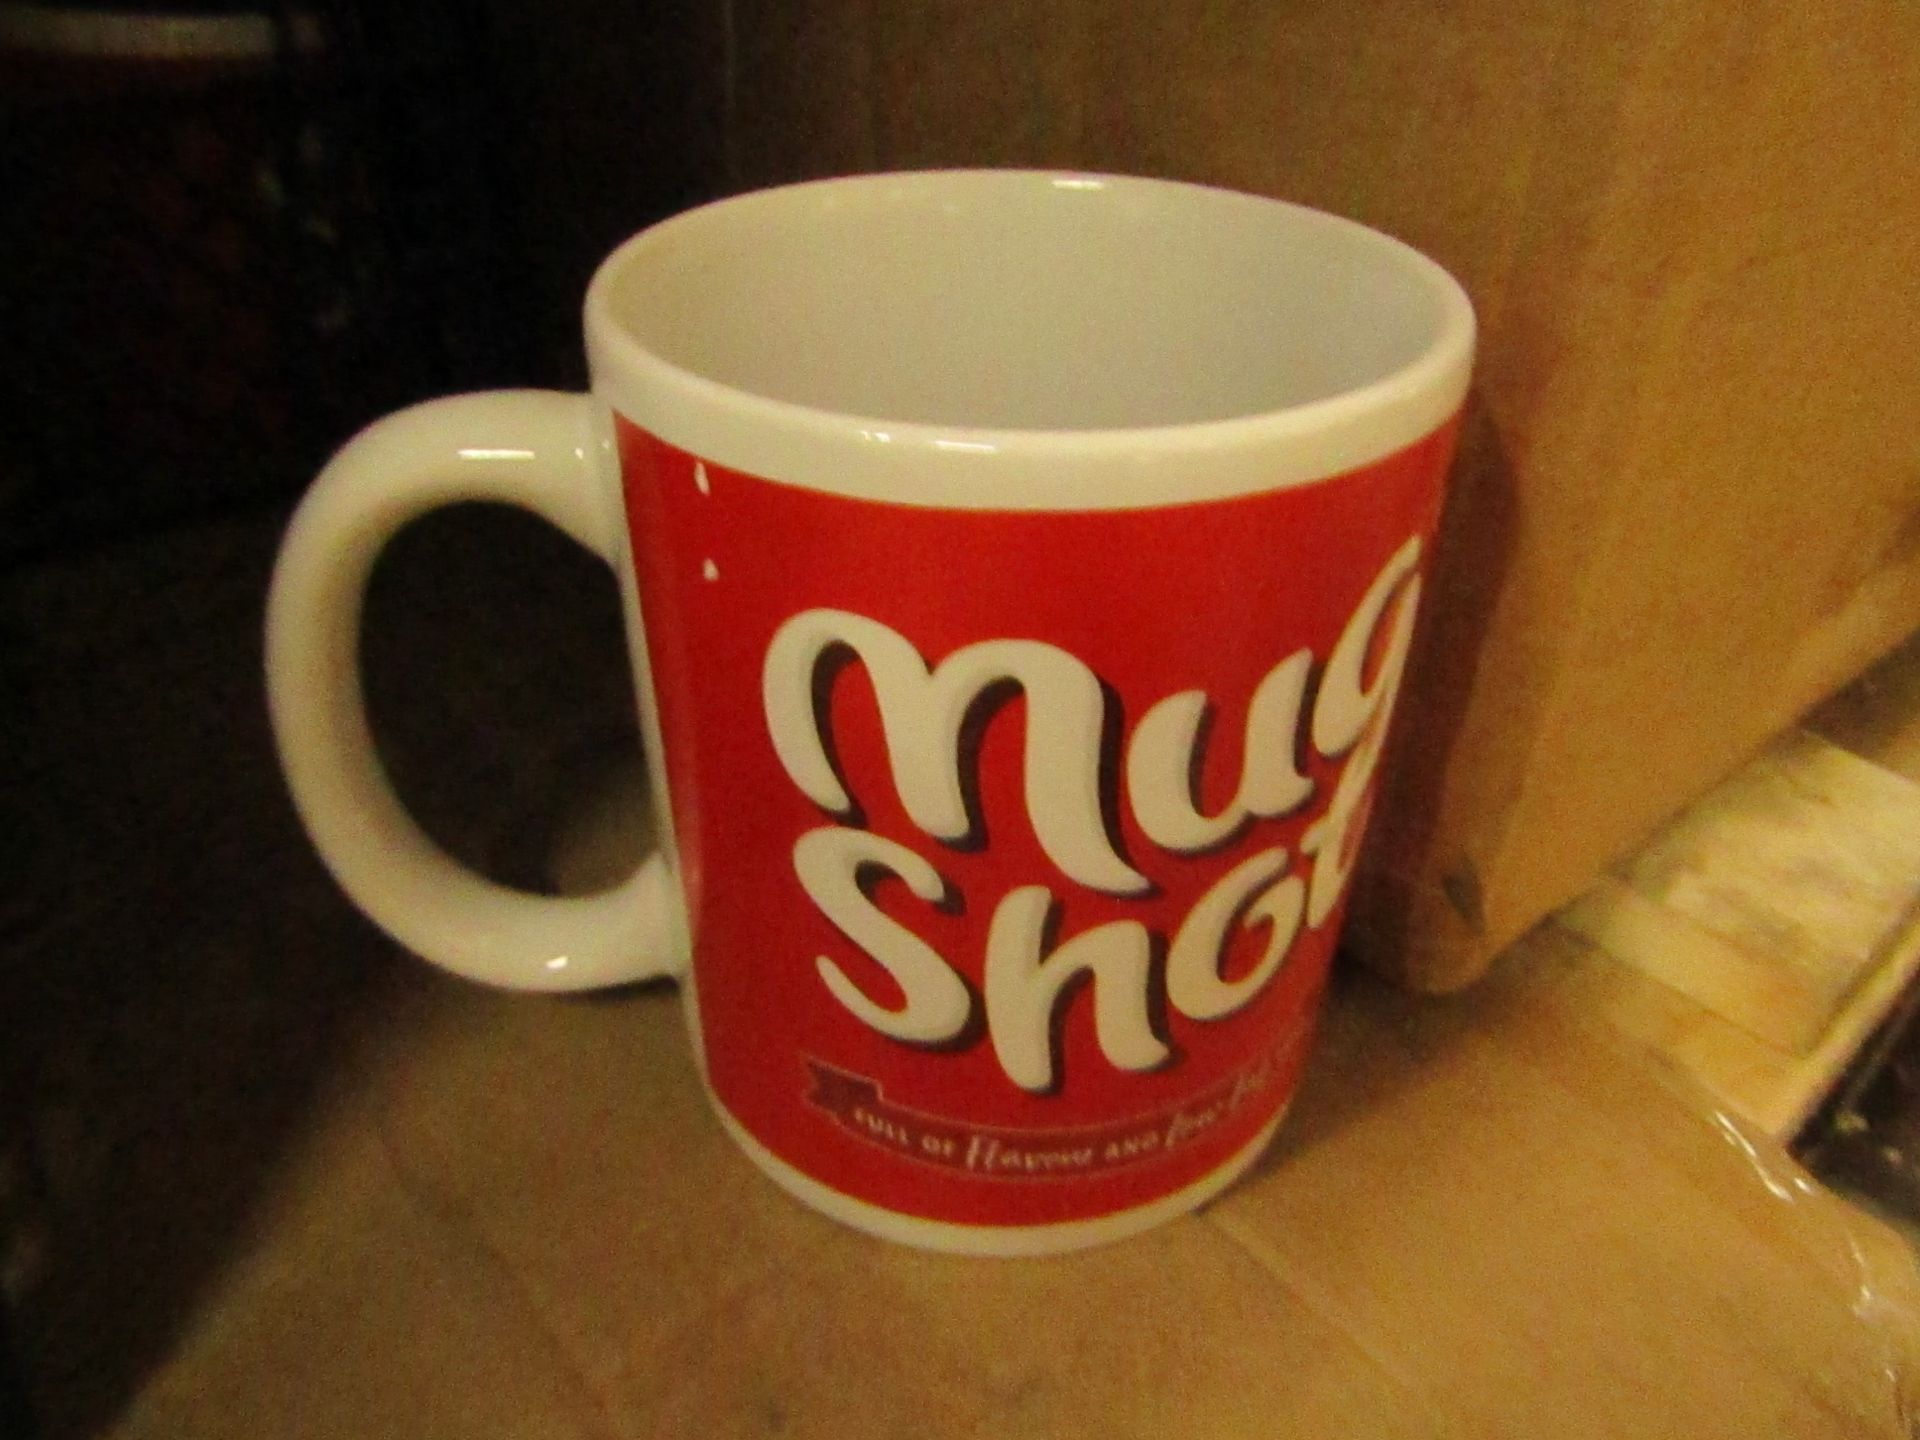 5x "Mug Shot" mugs, unused.